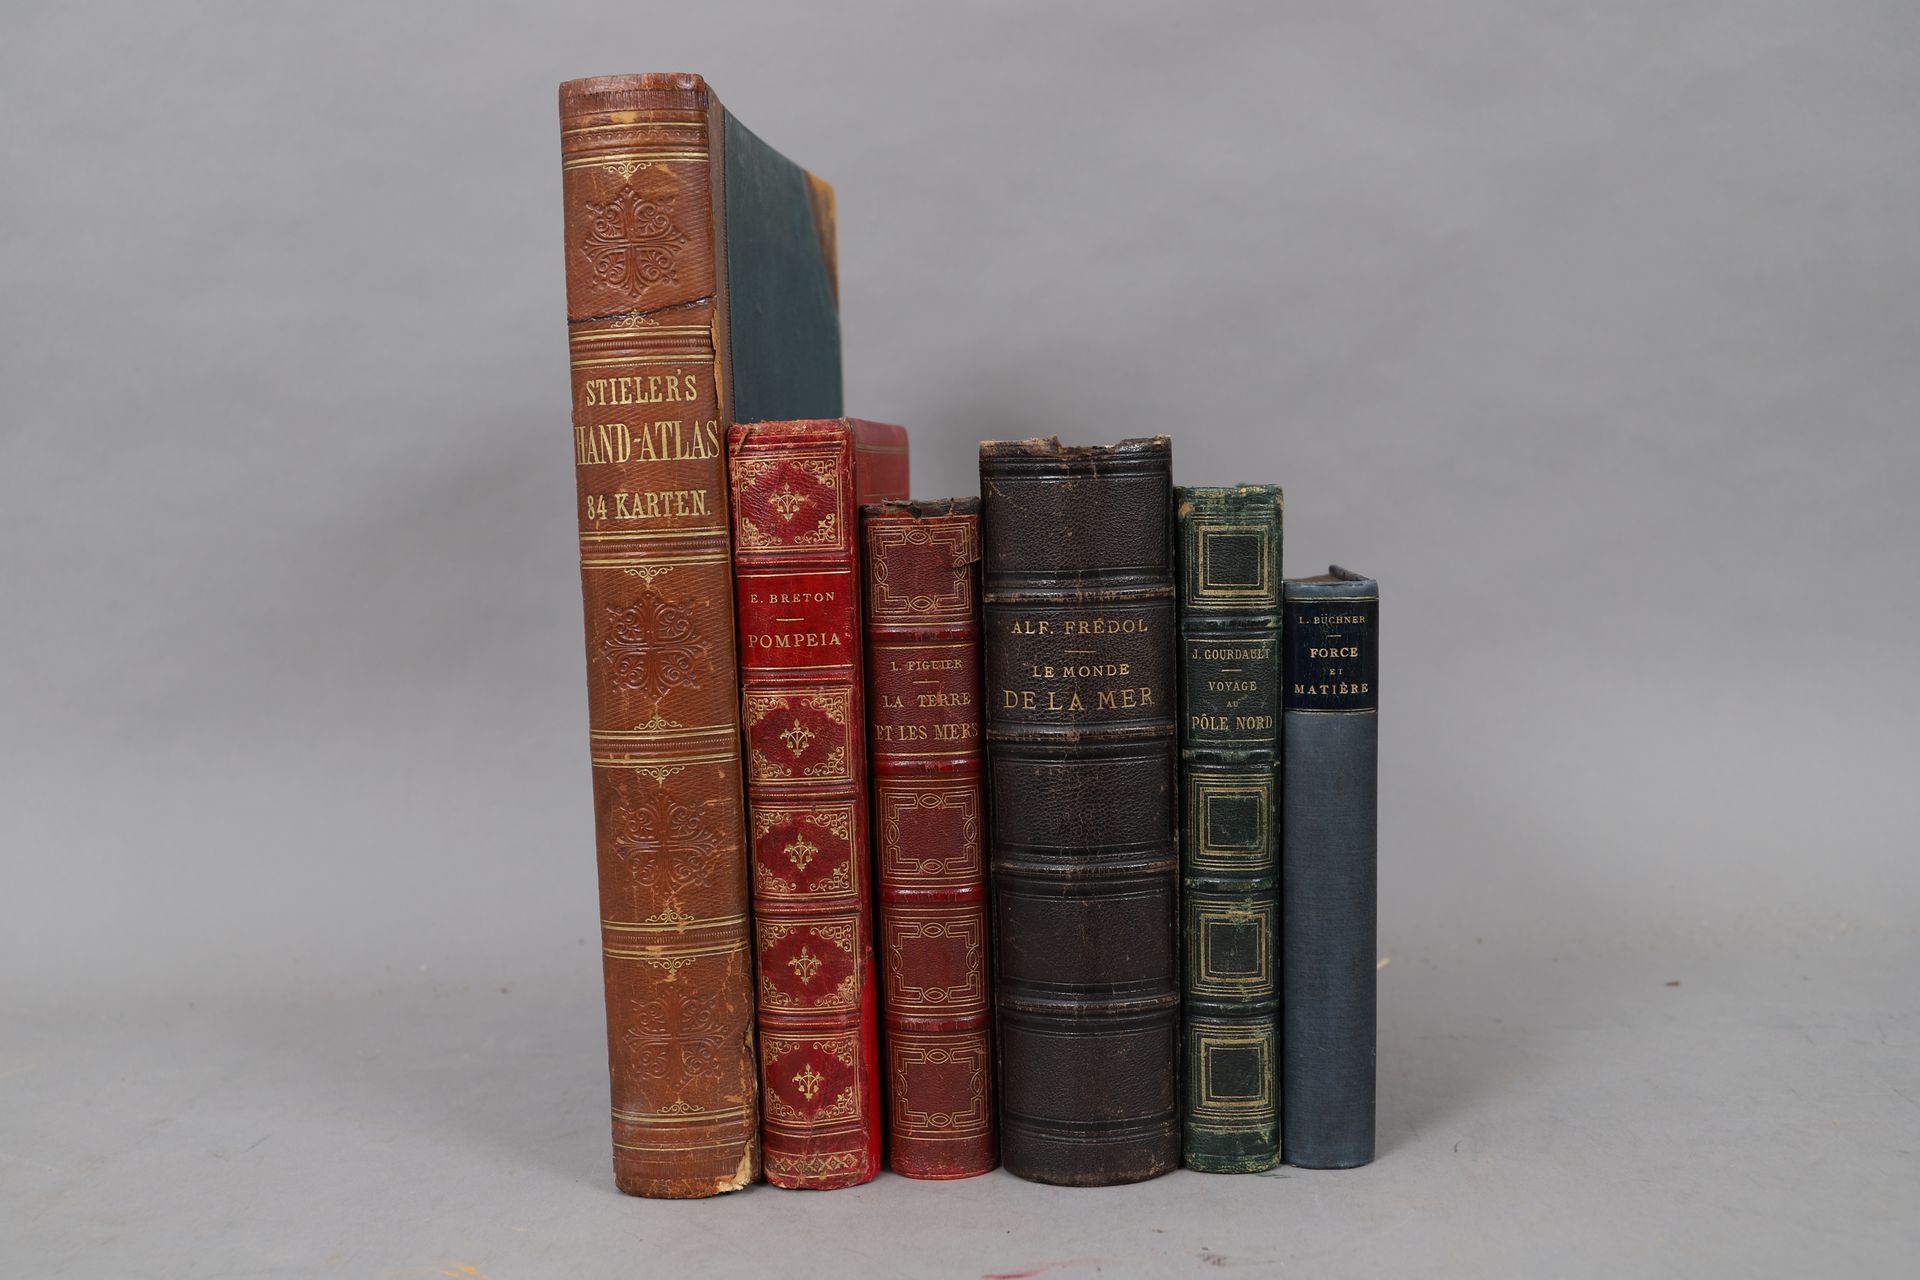 Null VIAGGIO e GEOGRAFIA

LOTTO di 6 volumi rilegati

XIX e XX secolo